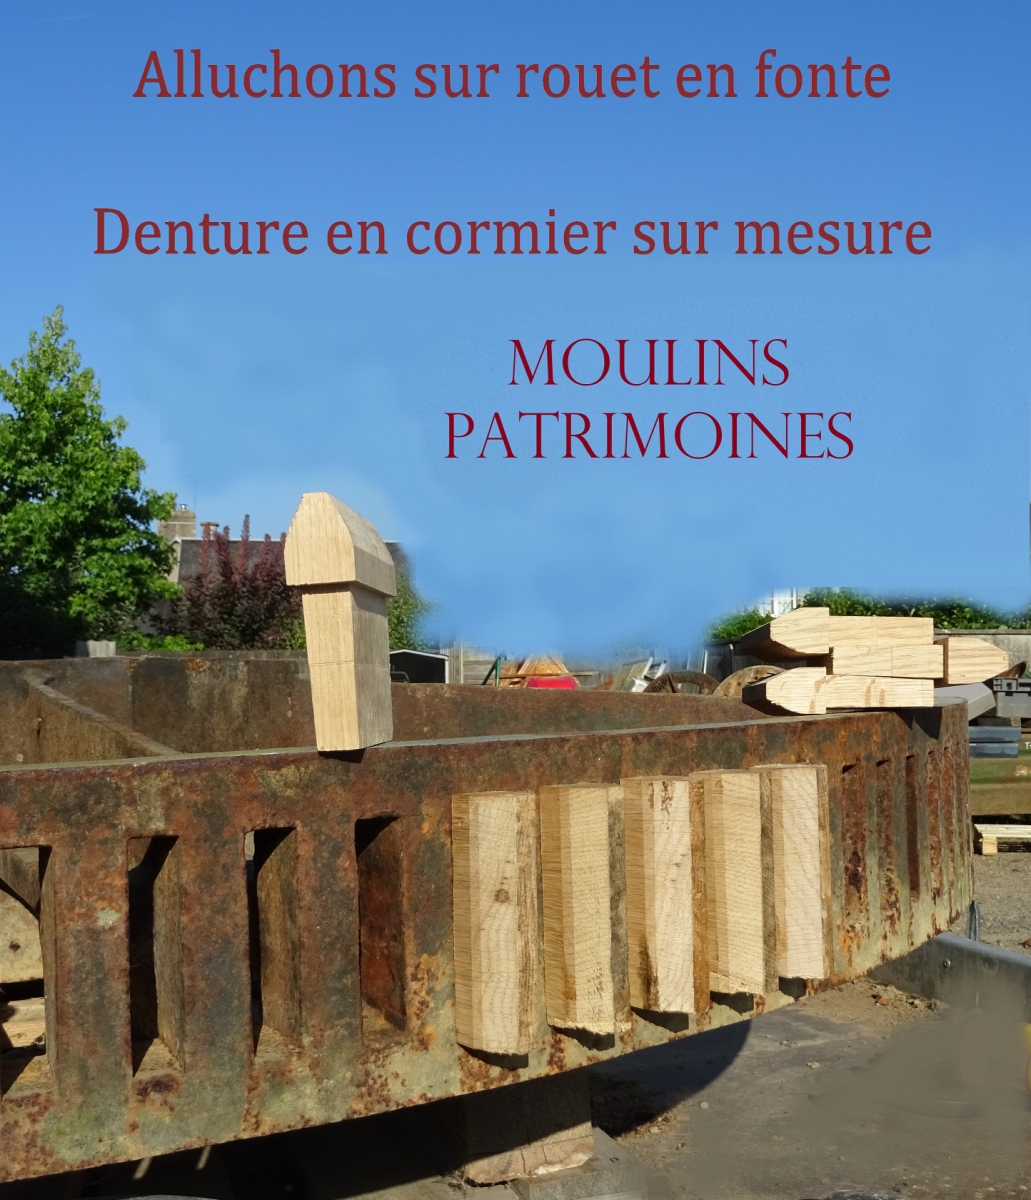 Alluchons cormier  Moulins-Patrimoines